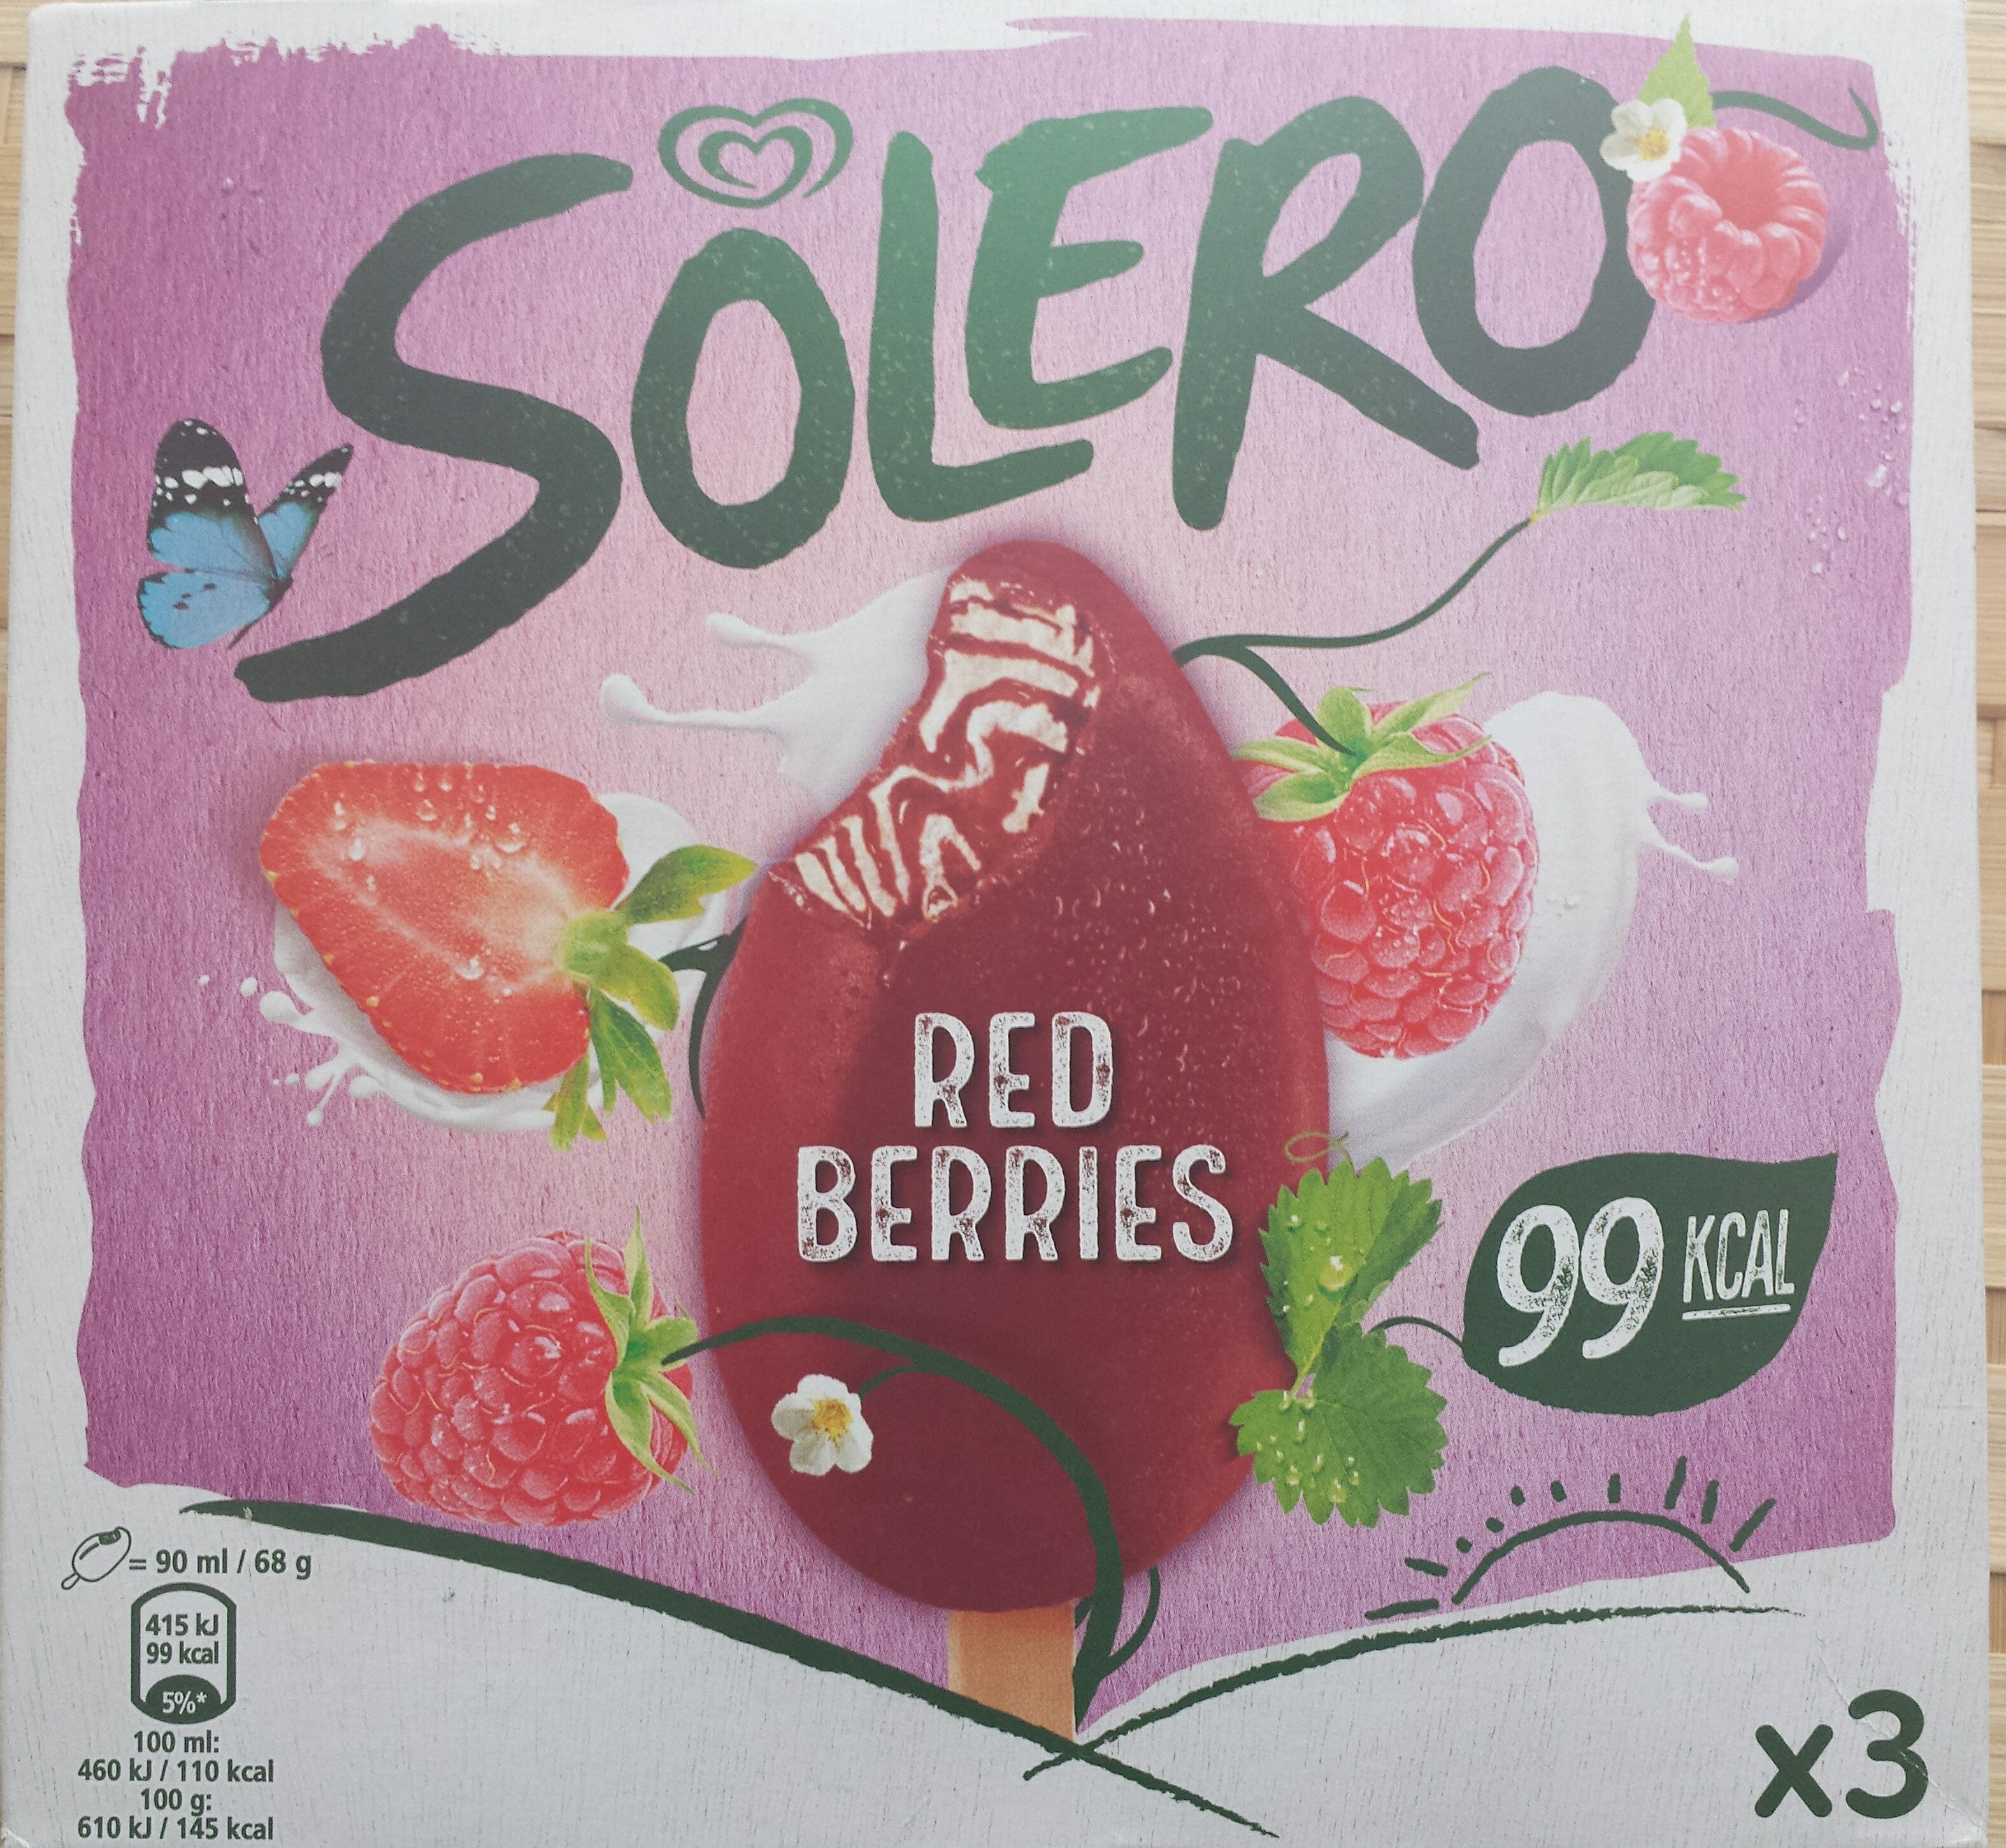 Solero - Red Berries - Product - en